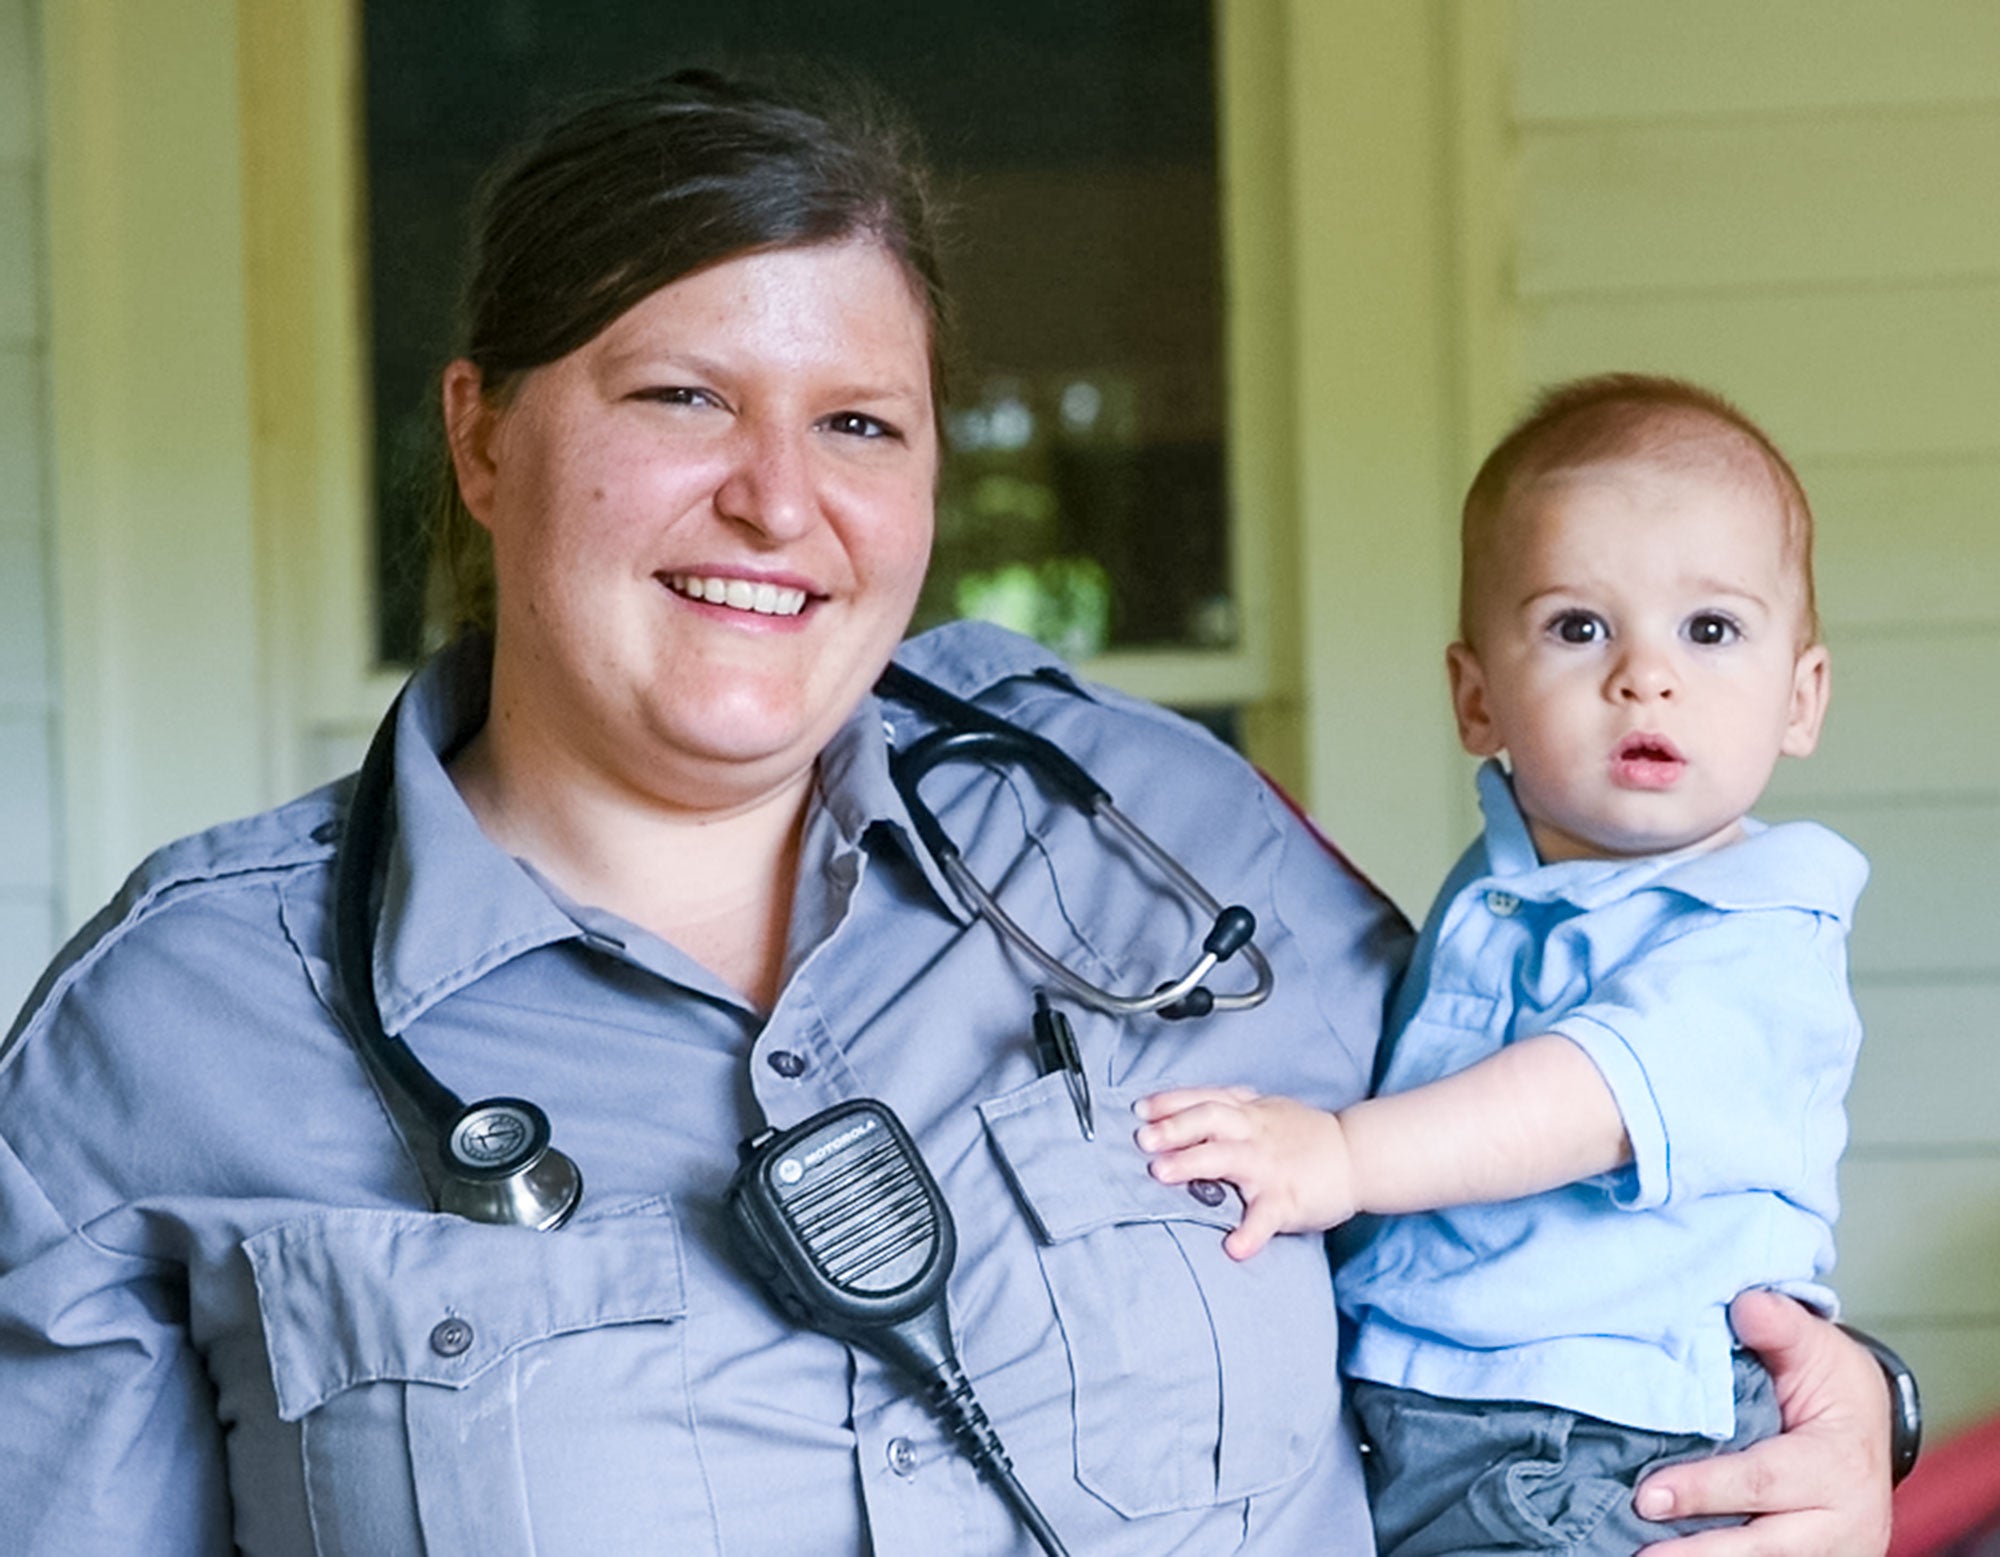 Un travailleur de la santé d'urgence femme sourit en uniforme tout en tenant son jeune enfant.